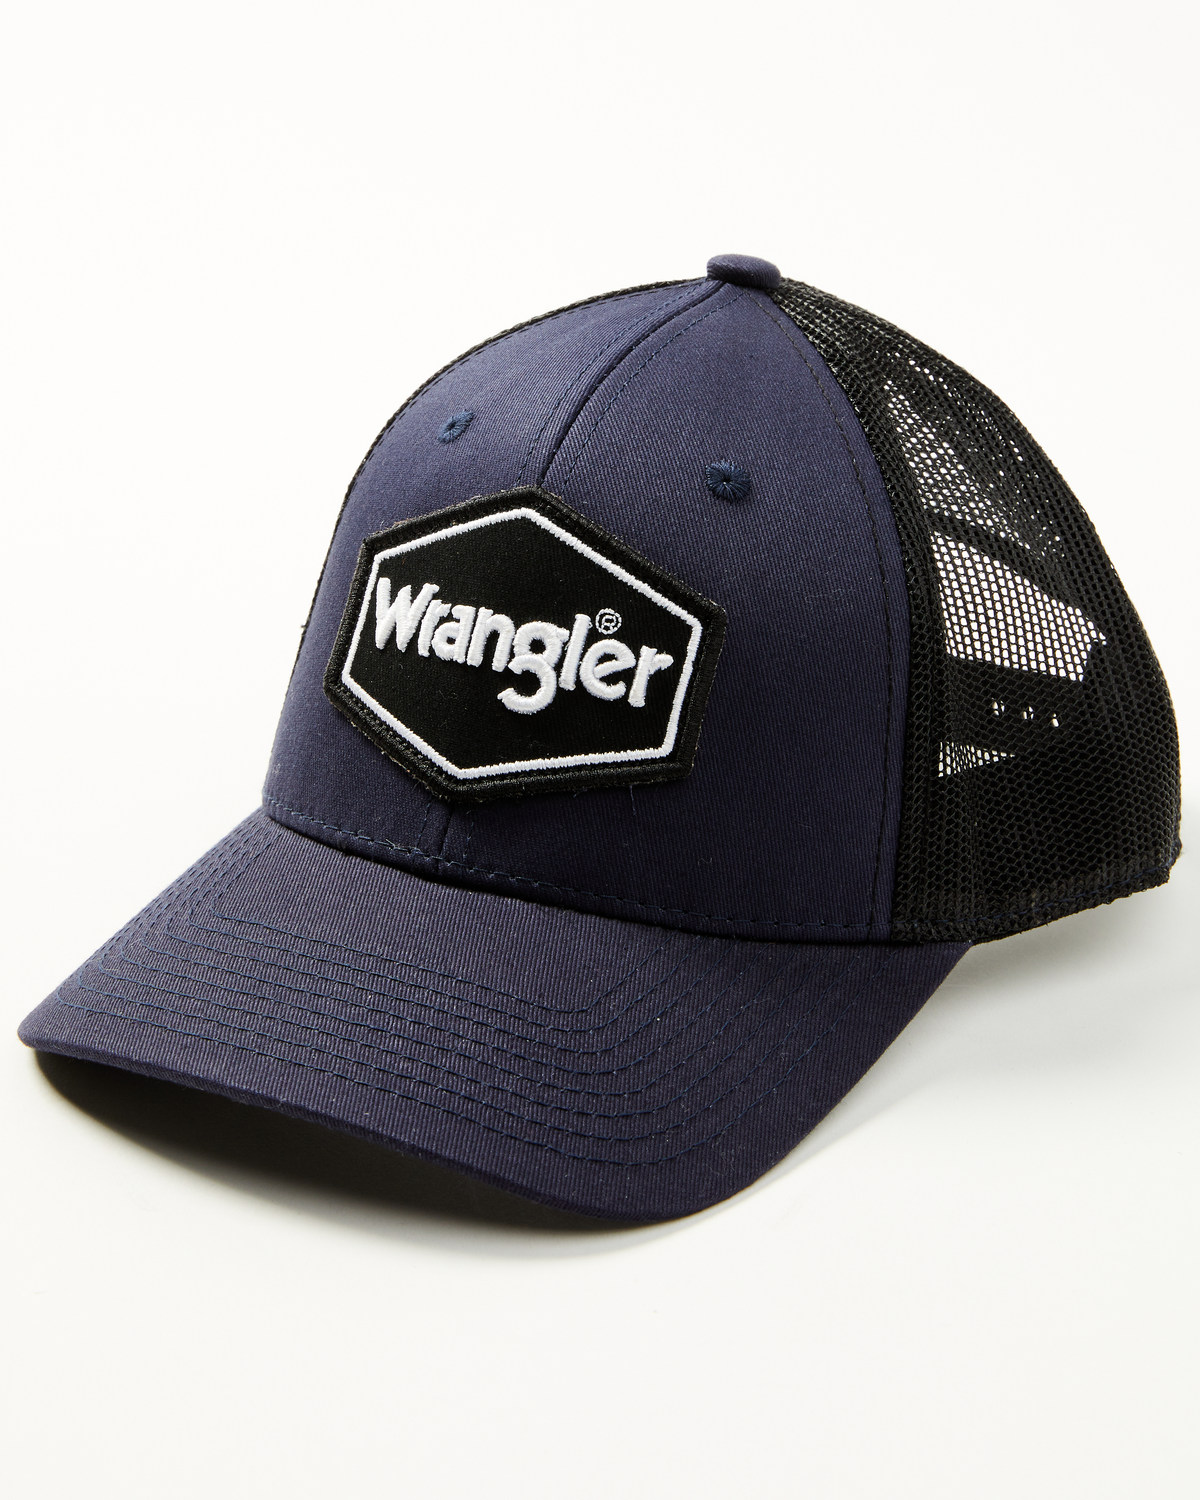 Wrangler Men's Standard Logo Patch Mesh-Back Ball Cap